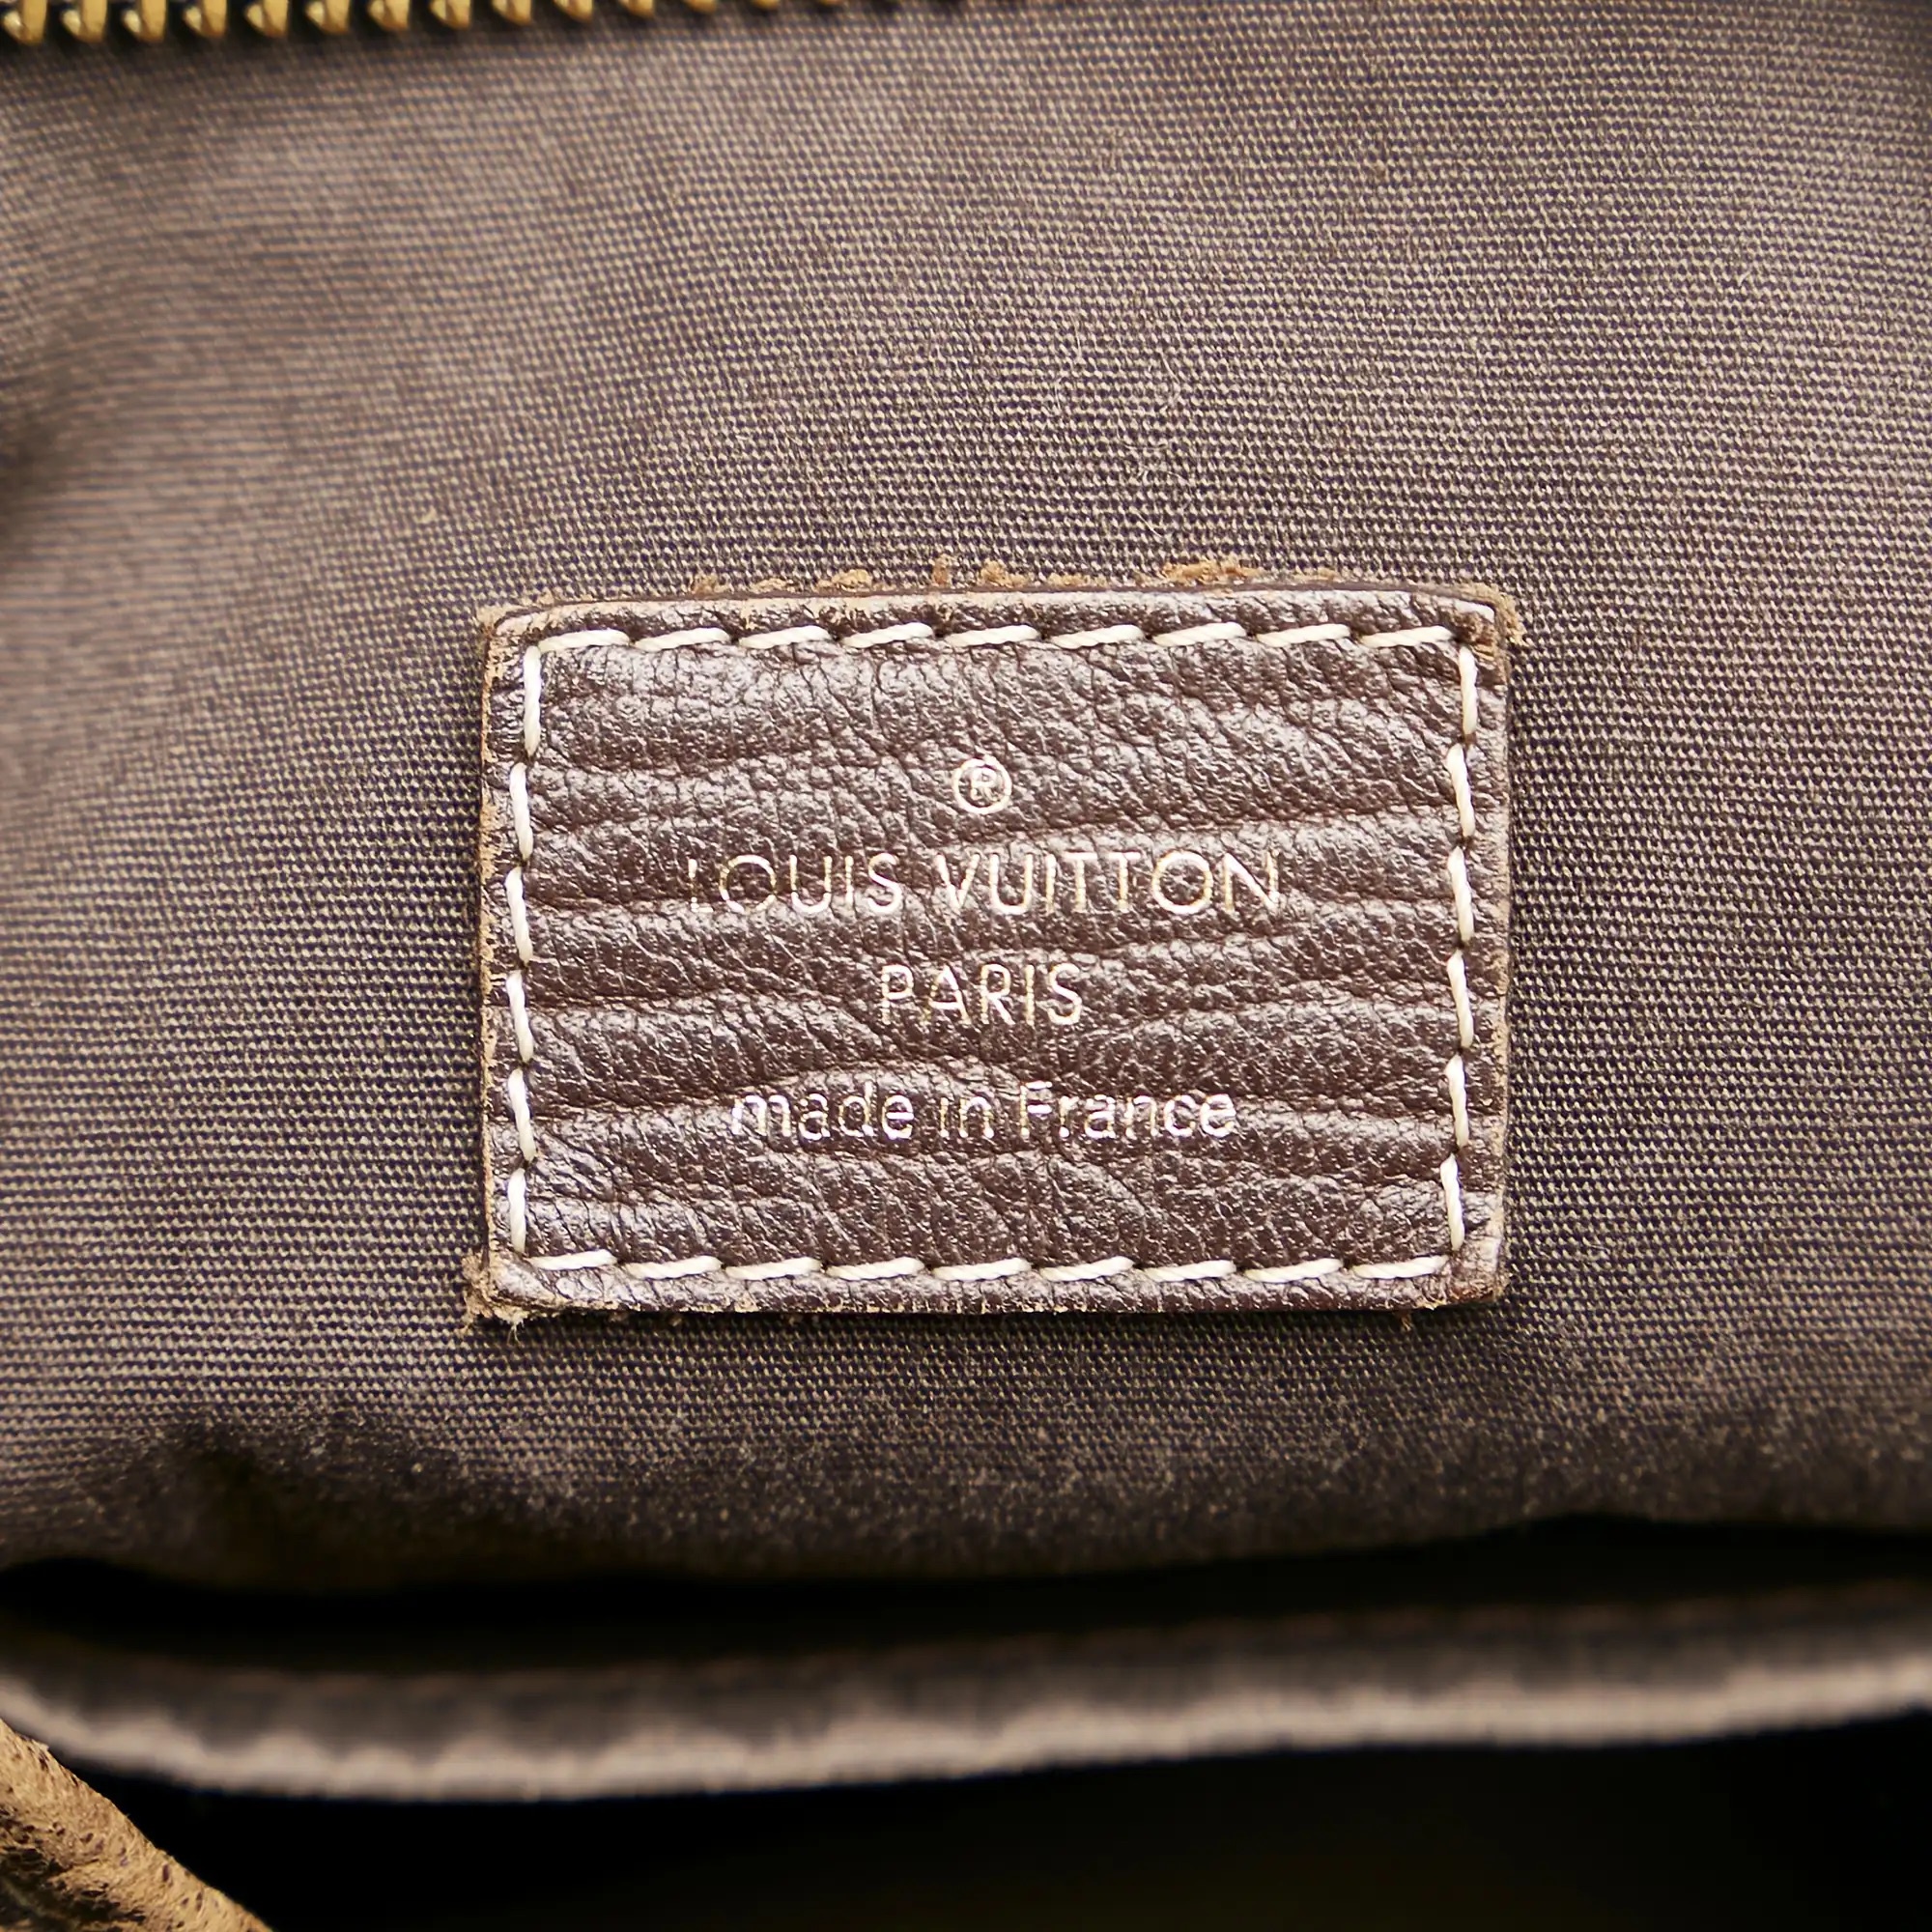 15 cách phân biệt túi Louis Vuitton chính hãng THẬT chuẩn nhất